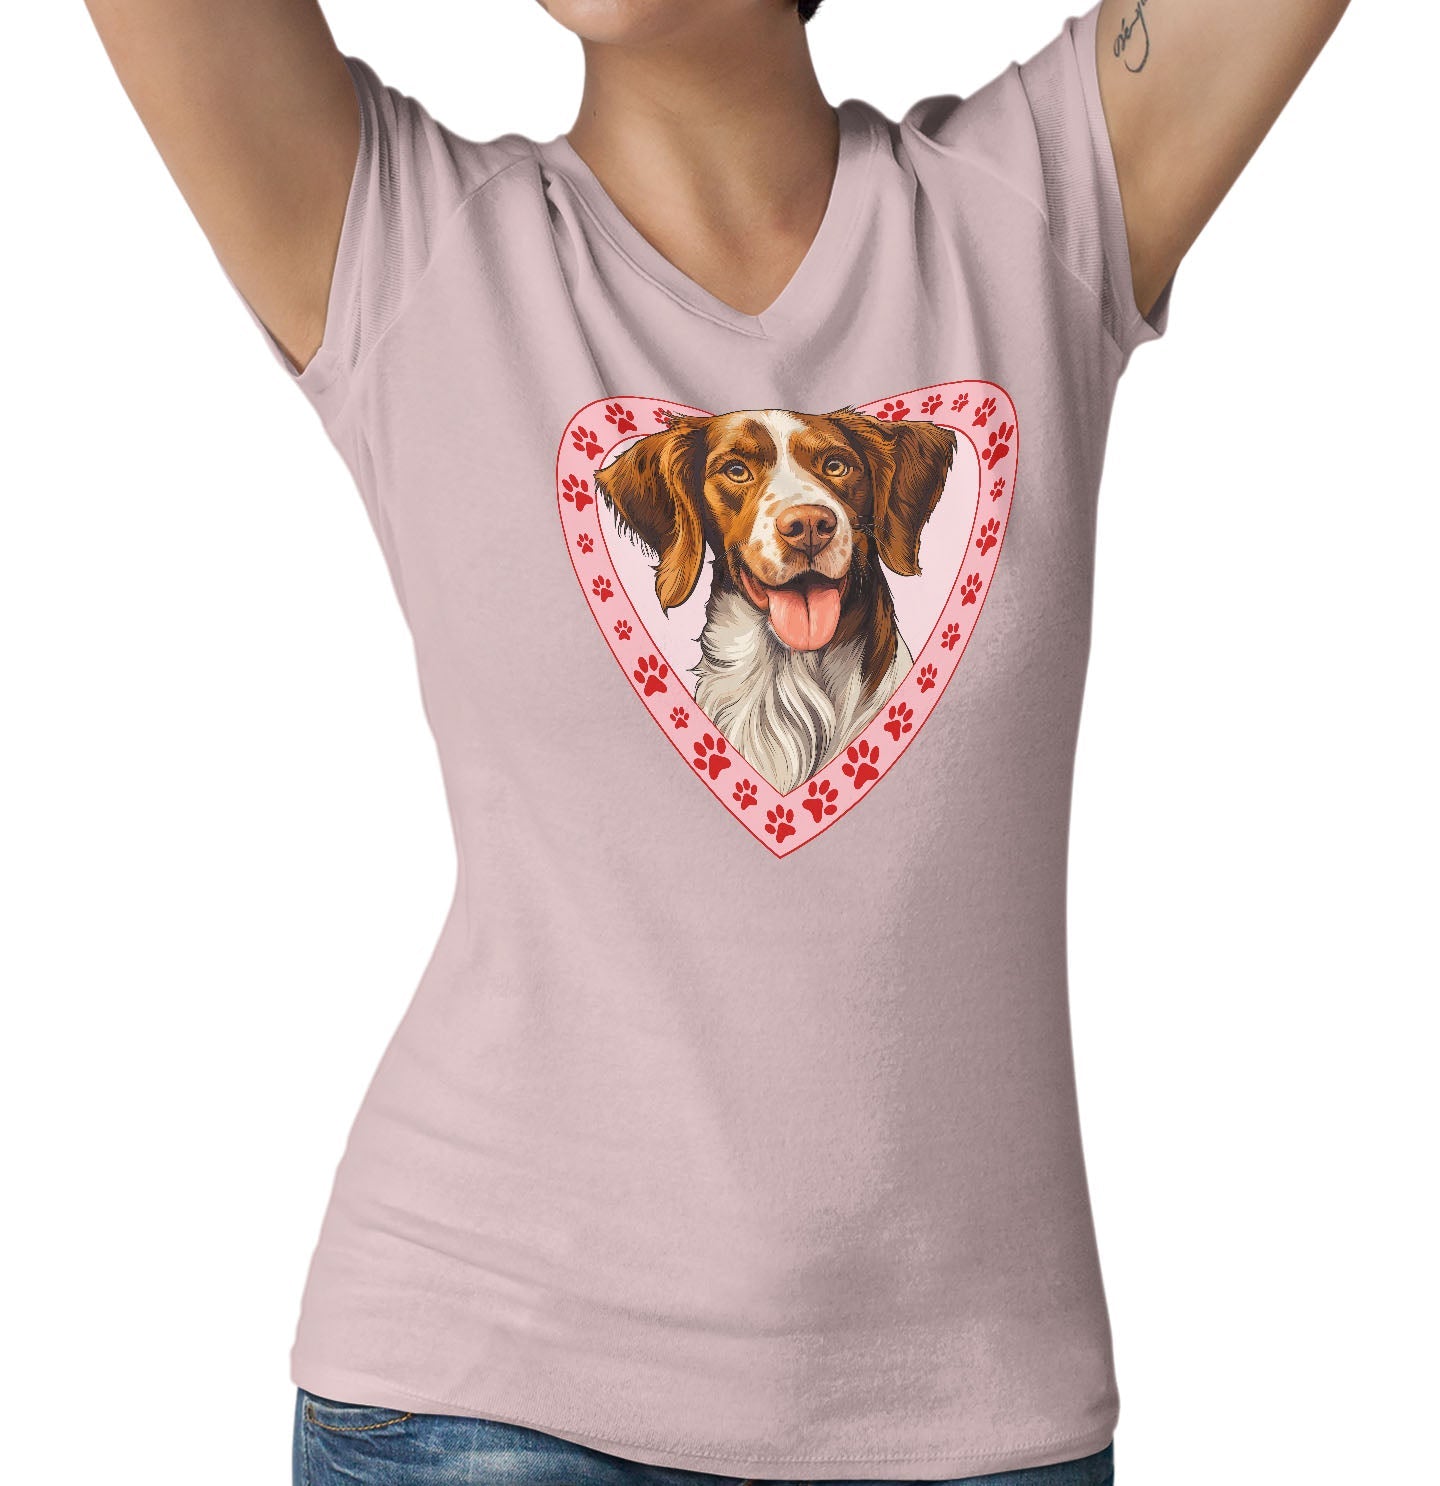 Brittany Illustration In Heart - Women's V-Neck T-Shirt